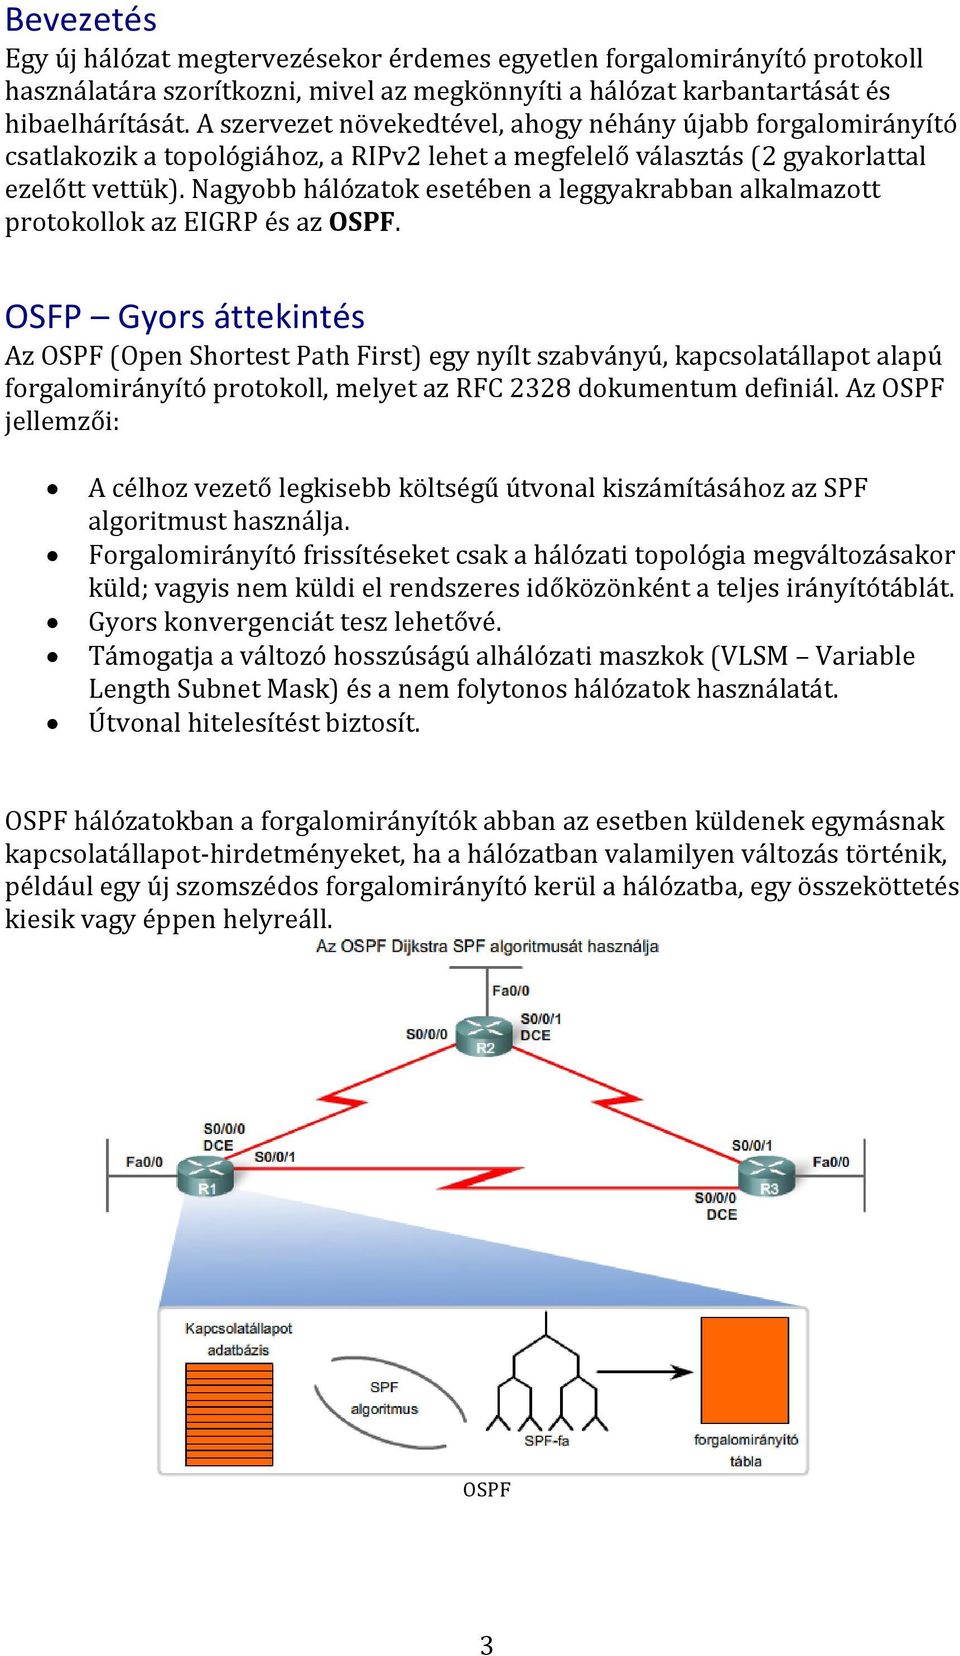 Nagyobb hálózatok esetében a leggyakrabban alkalmazott protokollok az EIGRP és az OSPF.